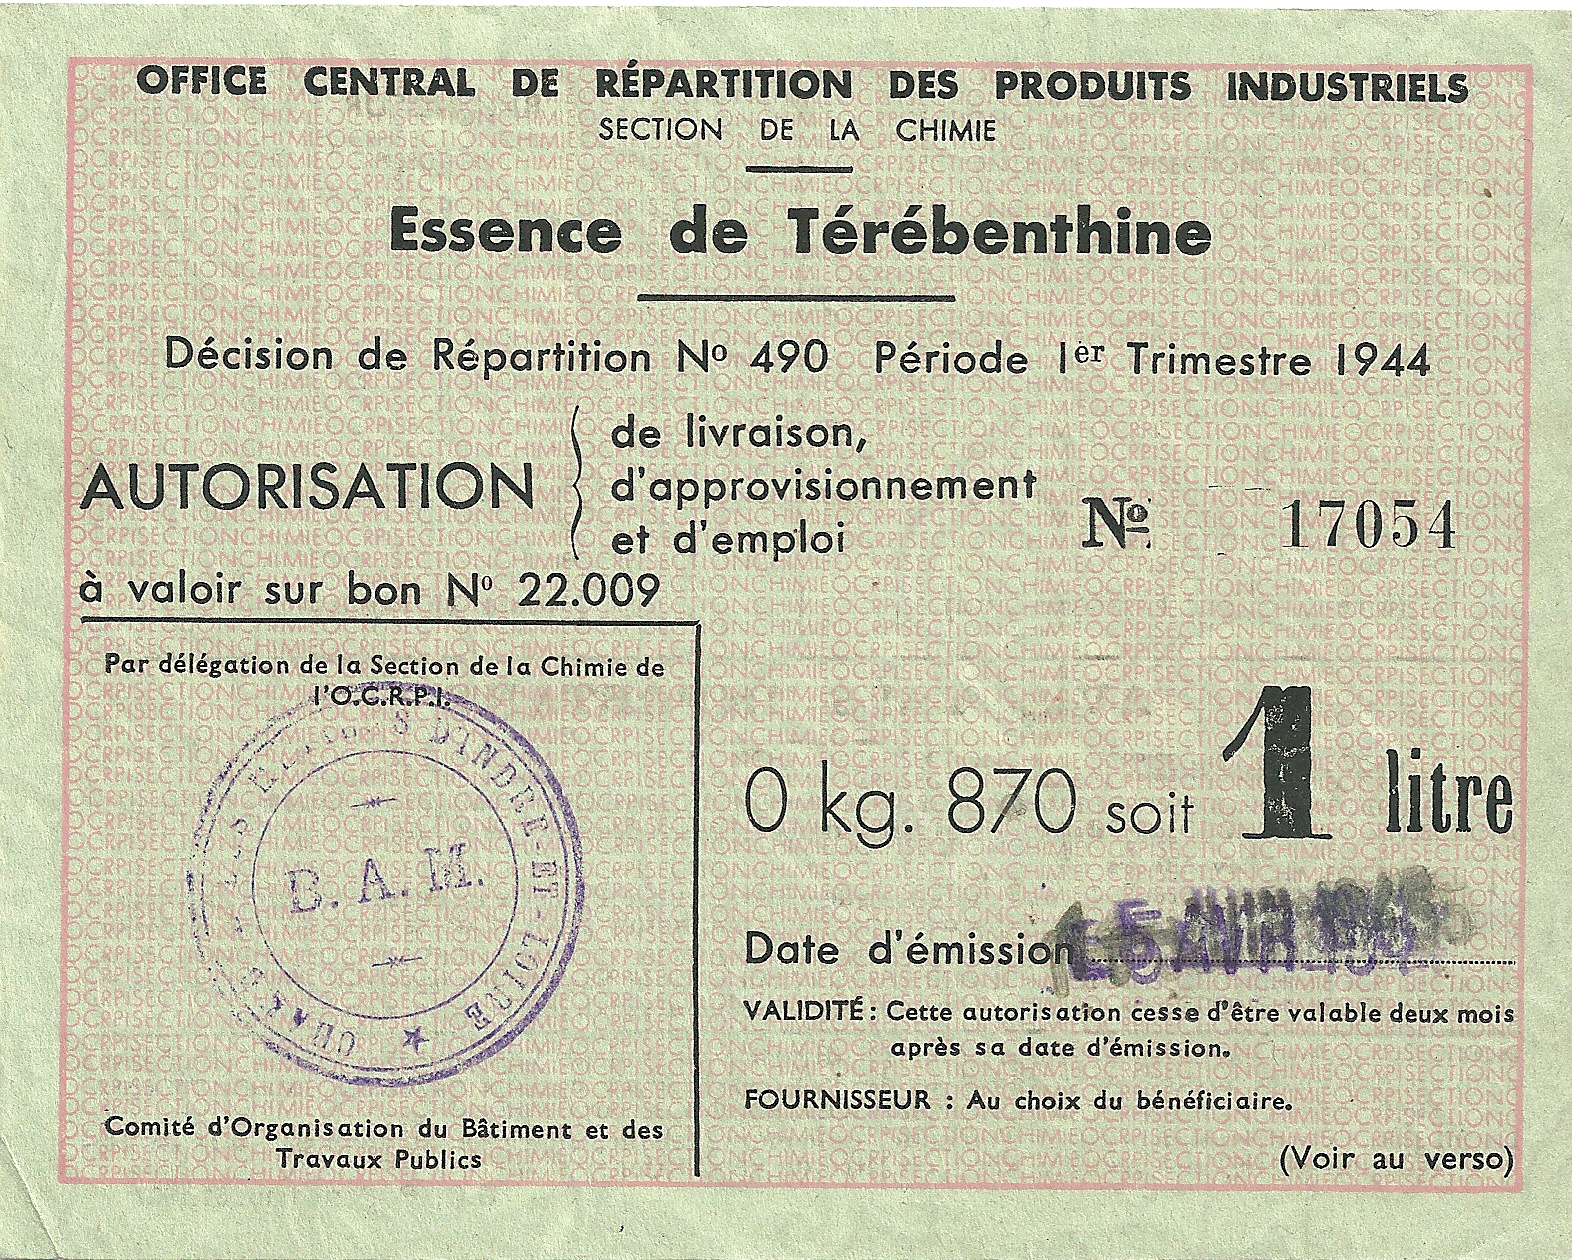 SECTION DE LA CHIMIE - Essence de Térébenthine - 0 kg. 870 soit 1 litre - 17 054